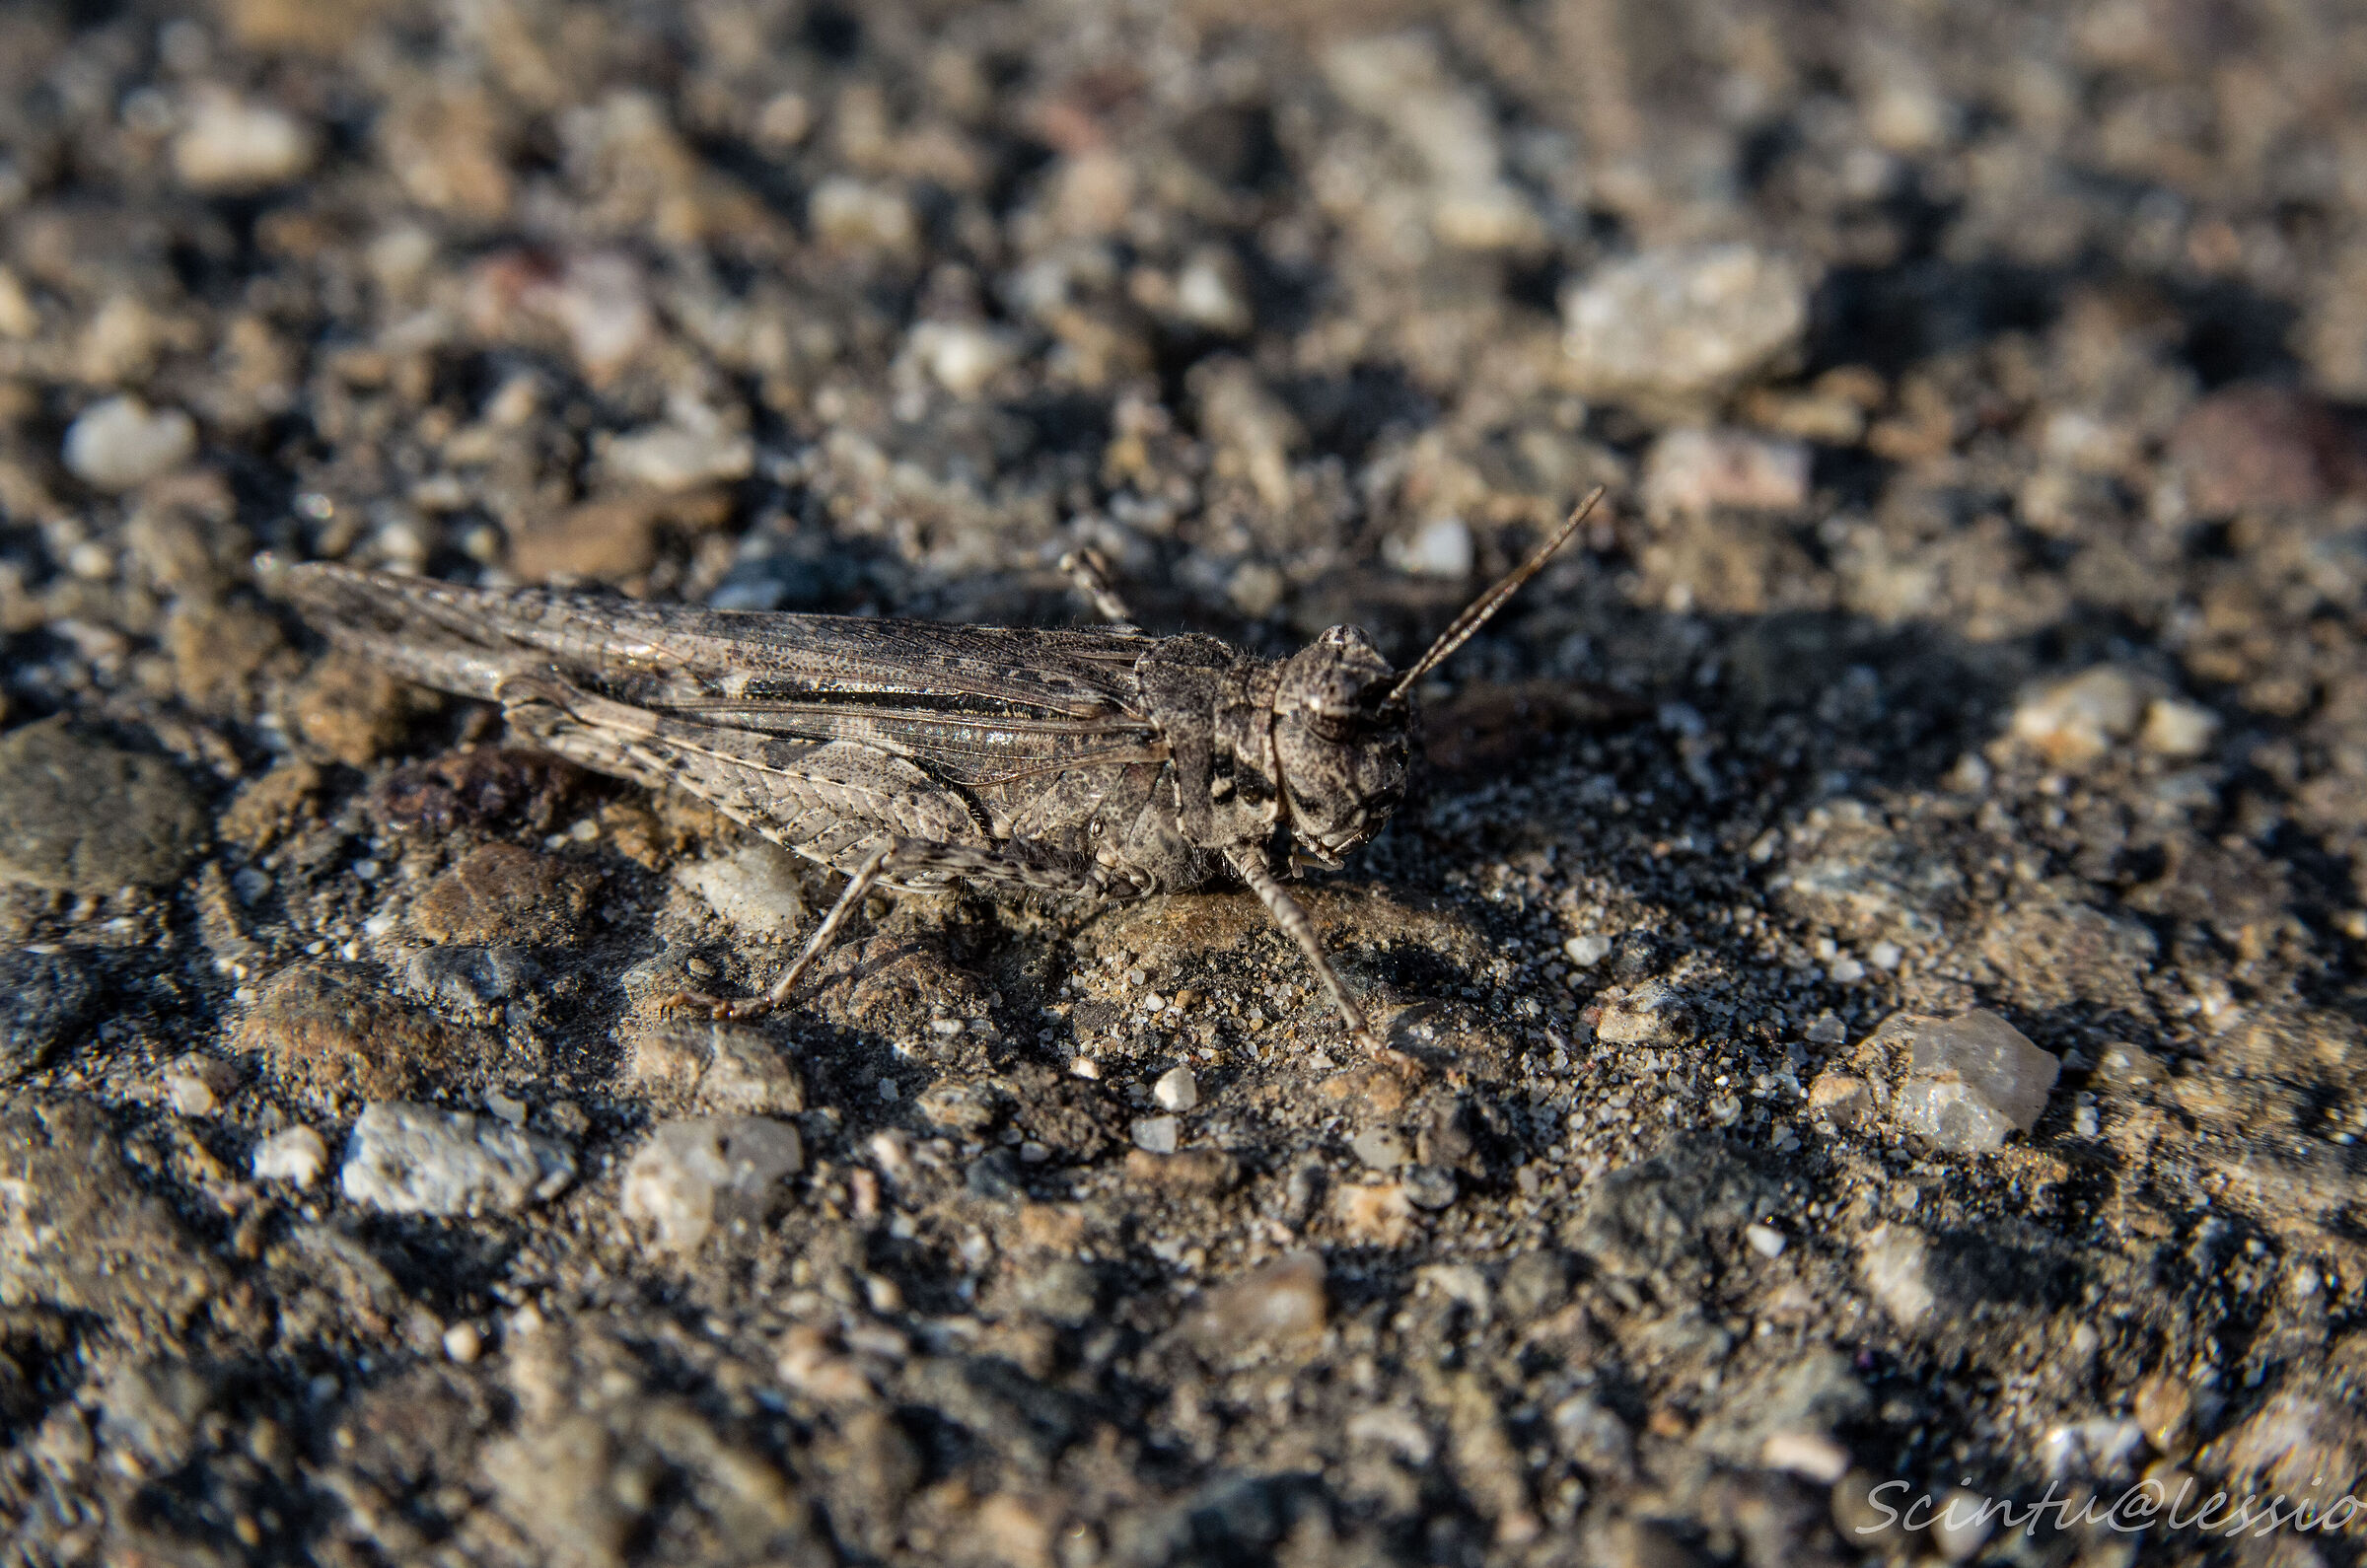 Grasshopper in the asphalt...